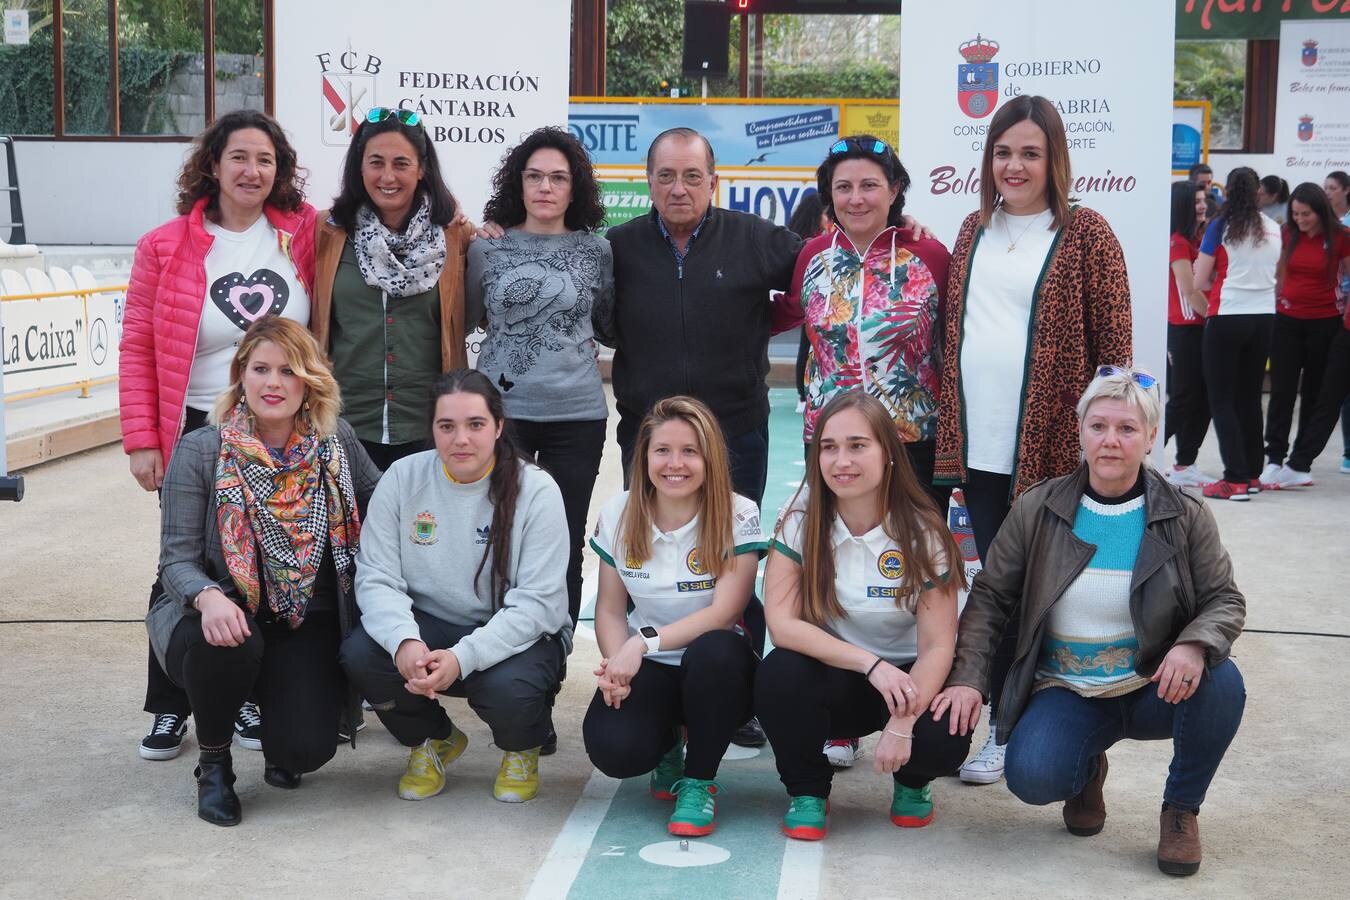 Fotos: Presentación de la Liga Femenina de bolos, con la presencia de María José Rienda